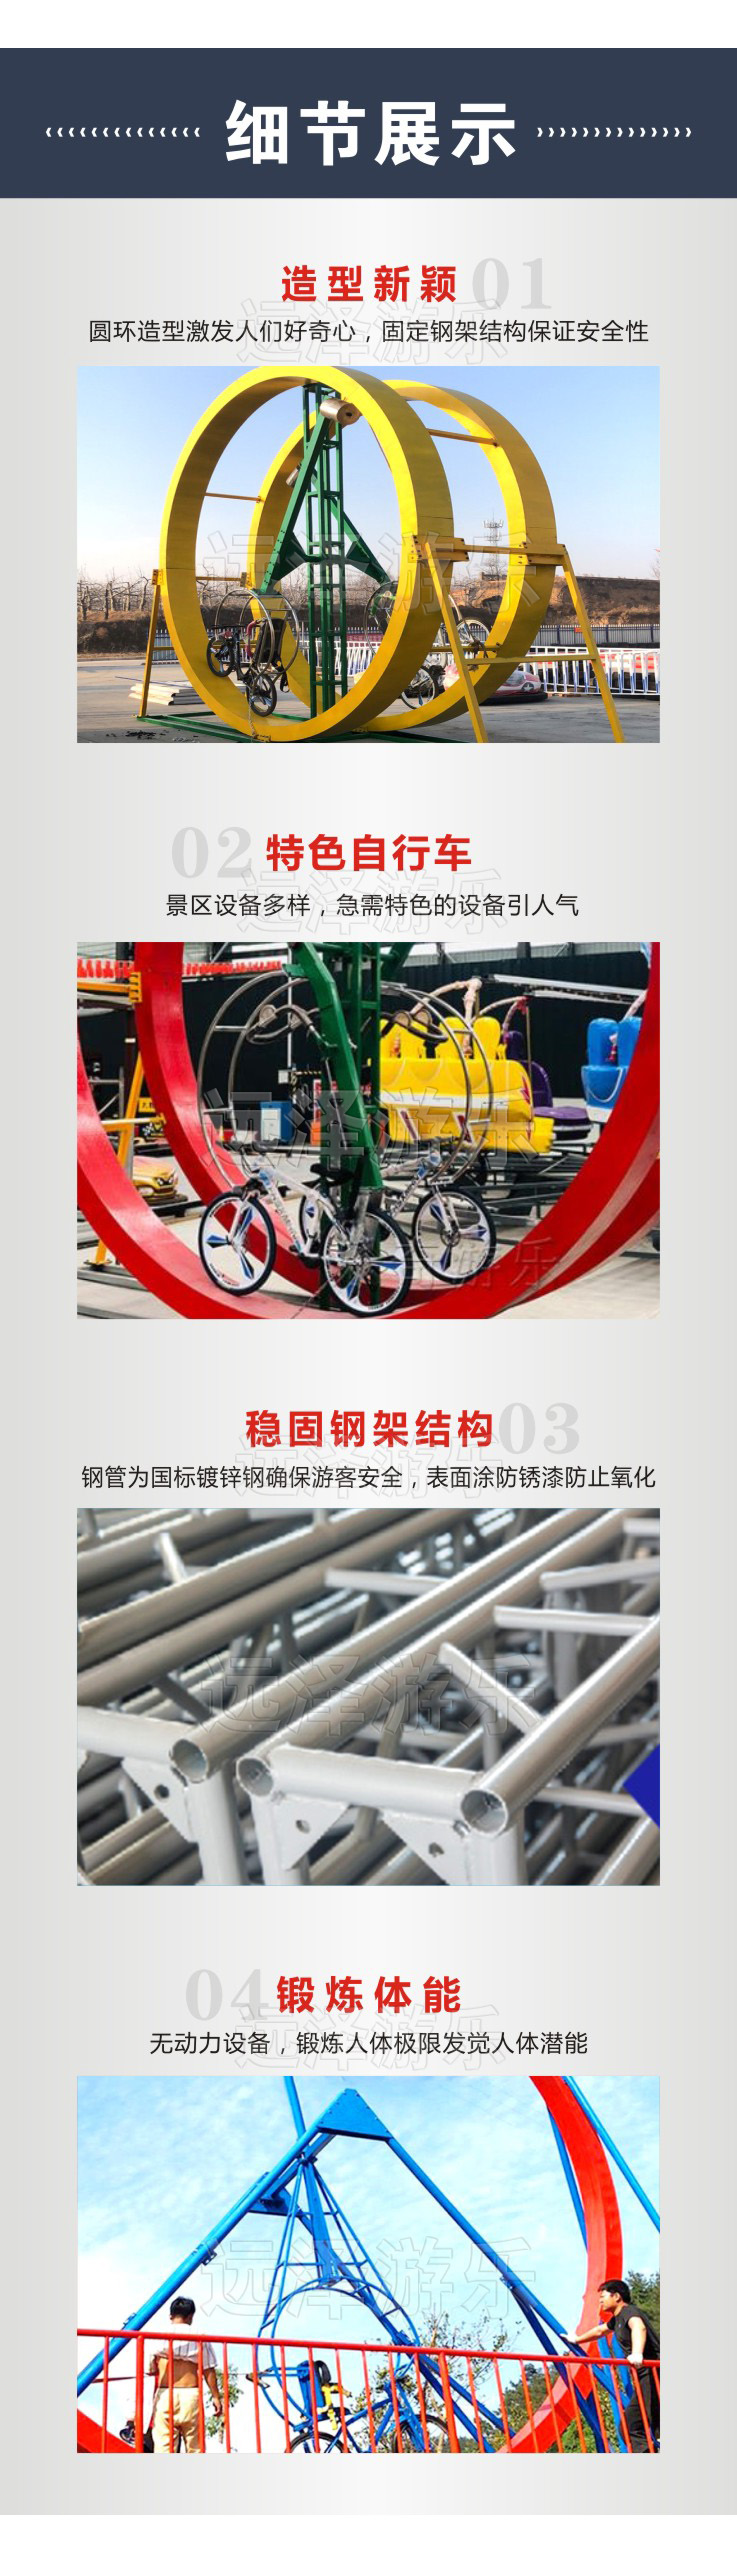 圆环单车游乐项目 网红新型游乐设施 网红自行车 无动力自行车 5